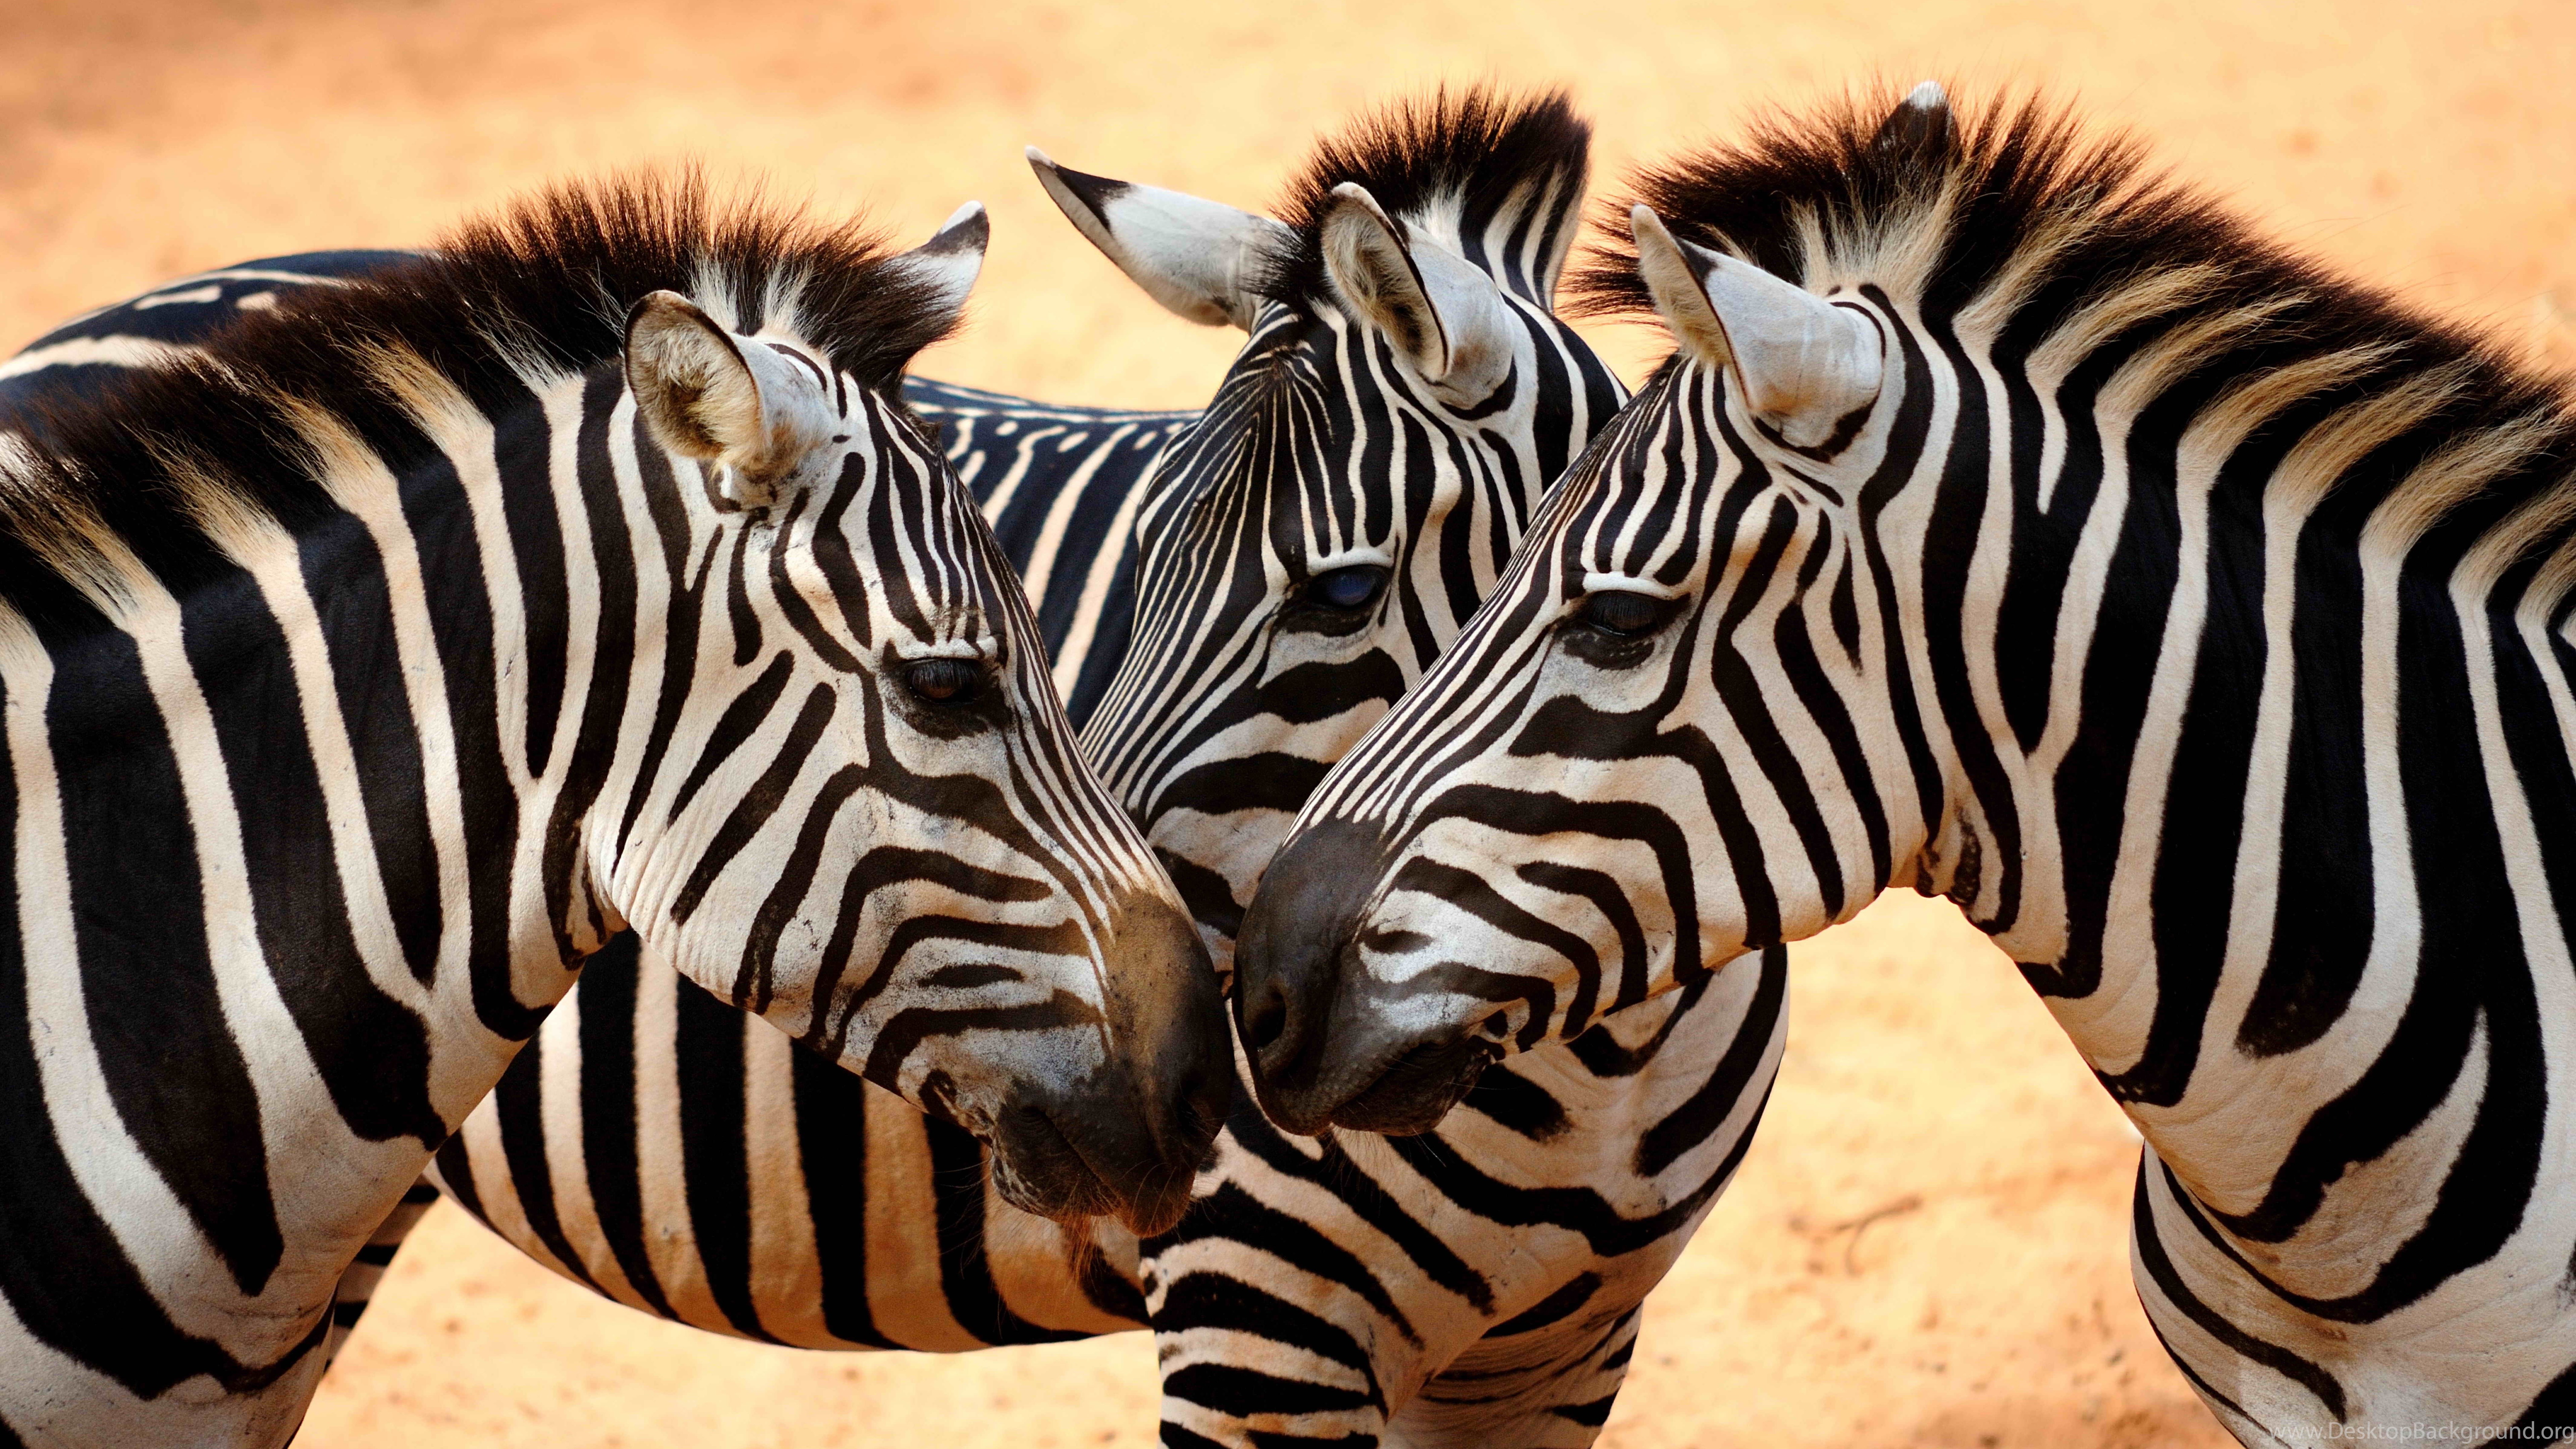 Zebra Wallpaper, Animals / Wild: Zebra, Savanna, Cute Animals ...